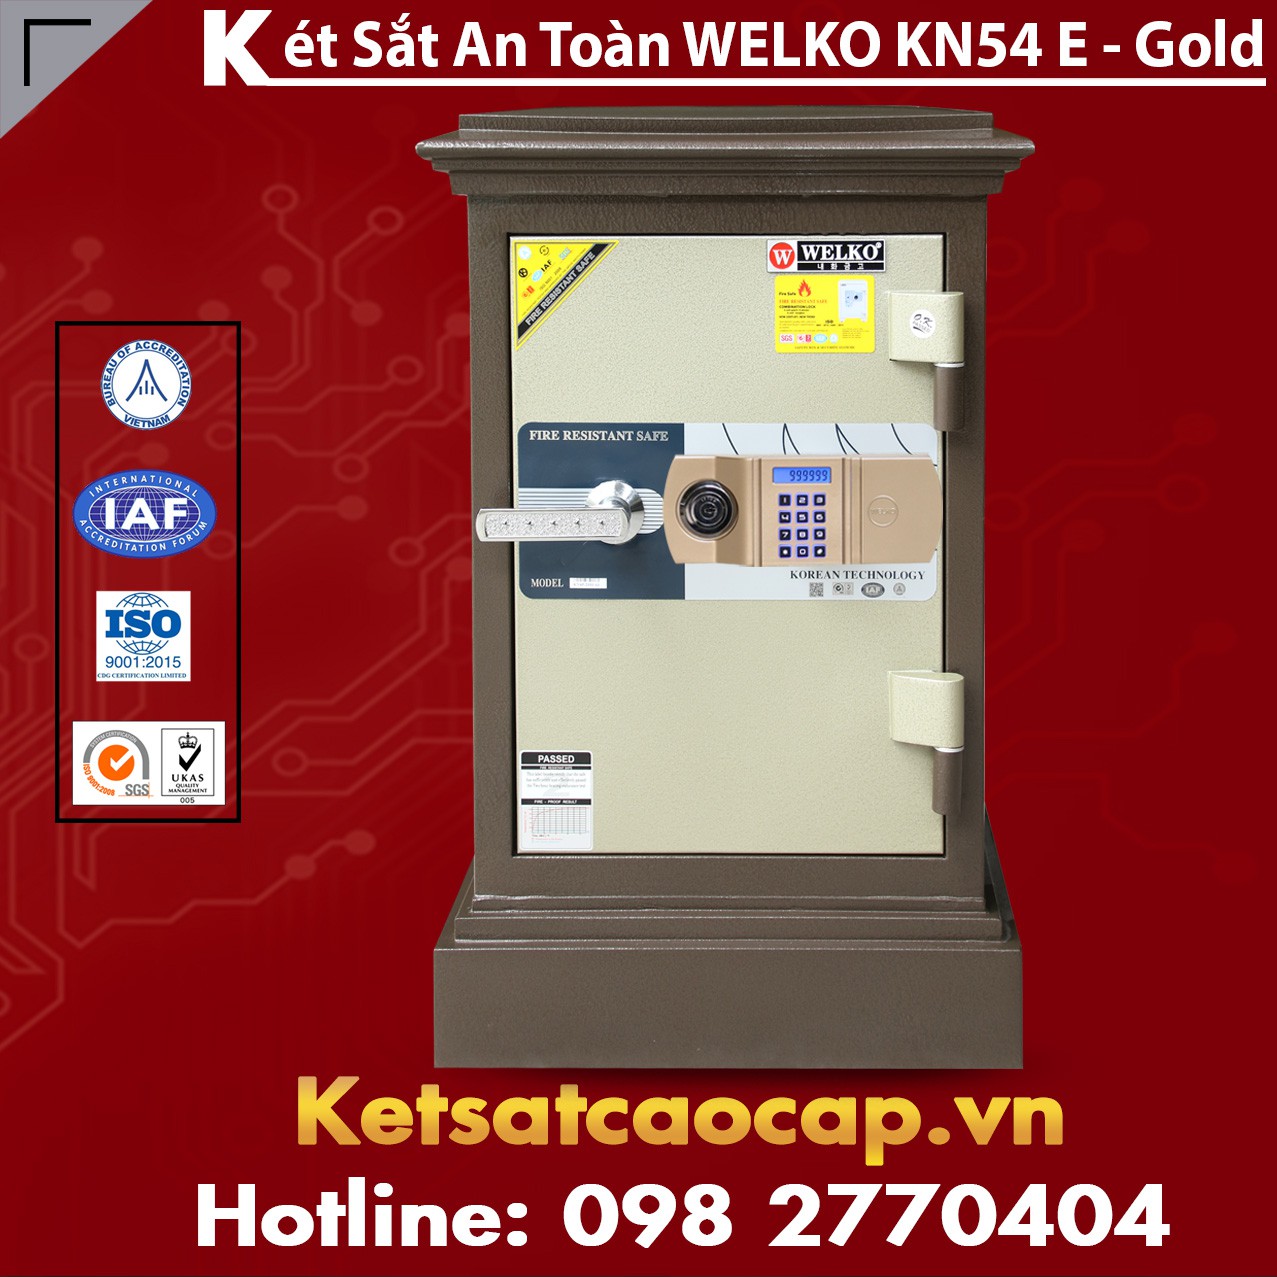 Két Sắt Công Ty Văn Phòng WELKO KN54 Brown - E Gold